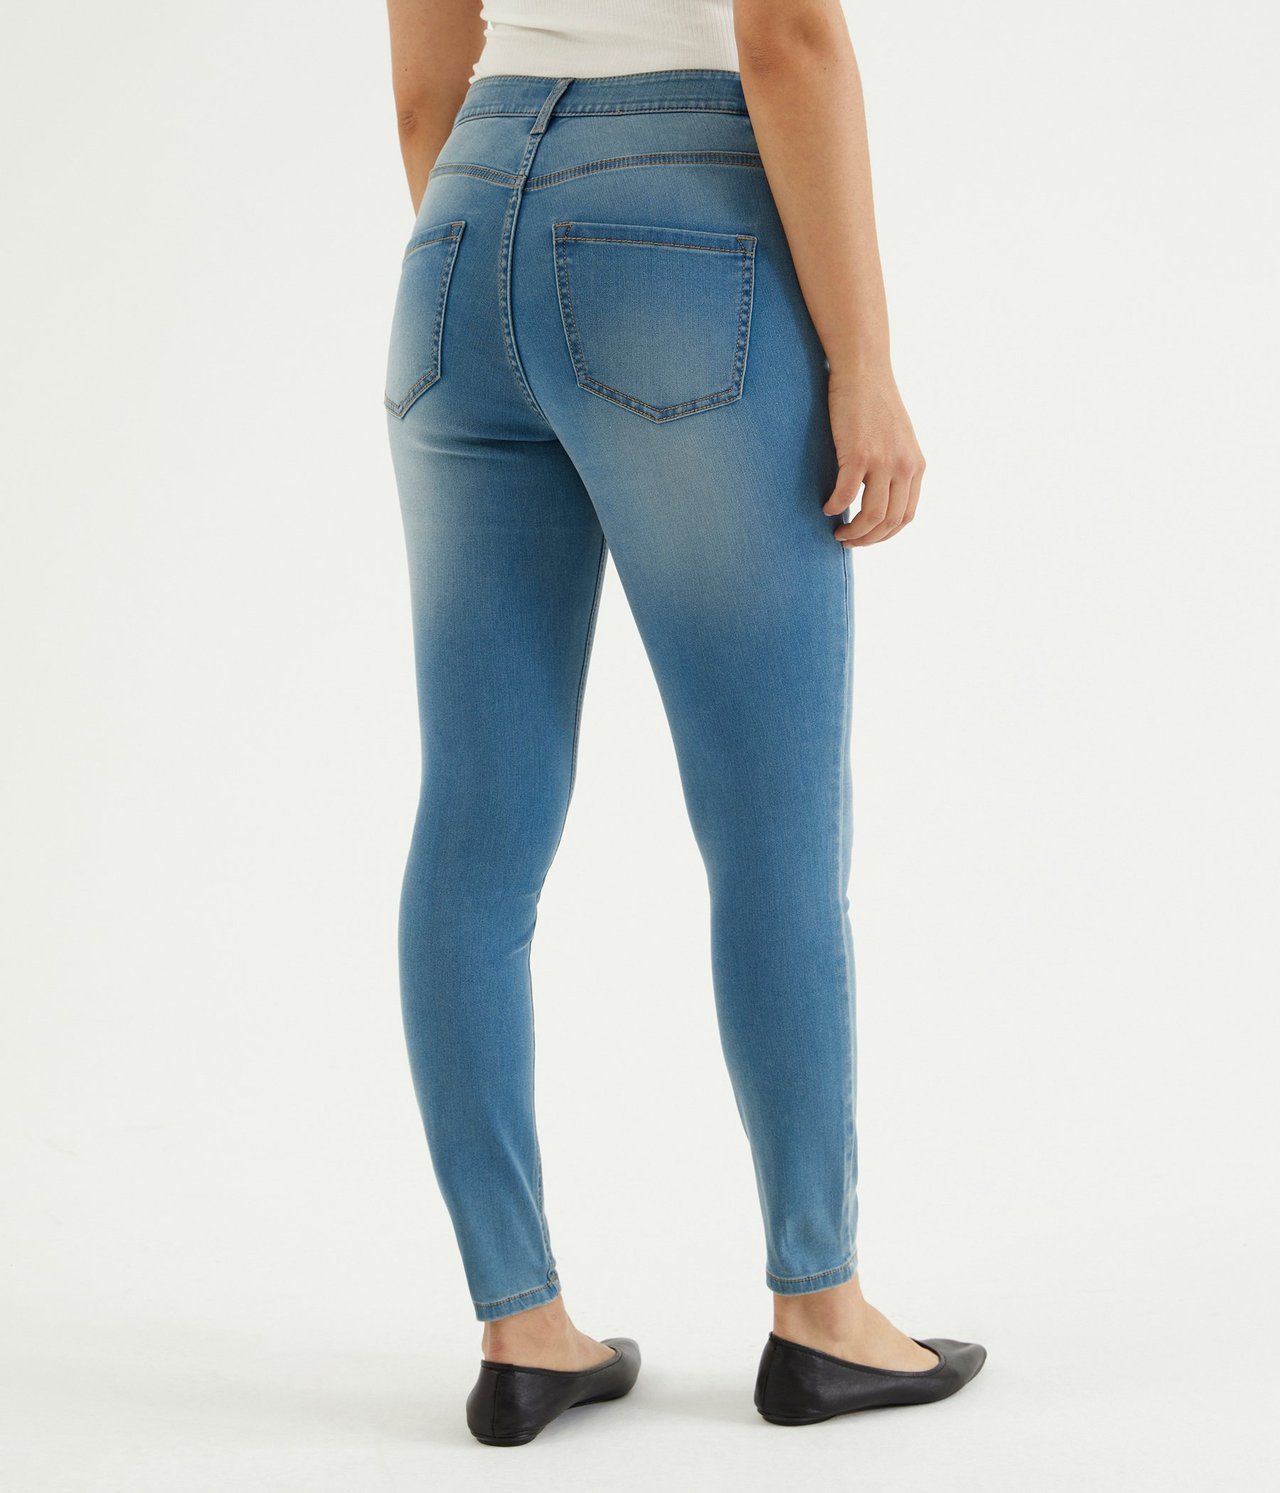 Super slim jeans short leg Denim - null - 0